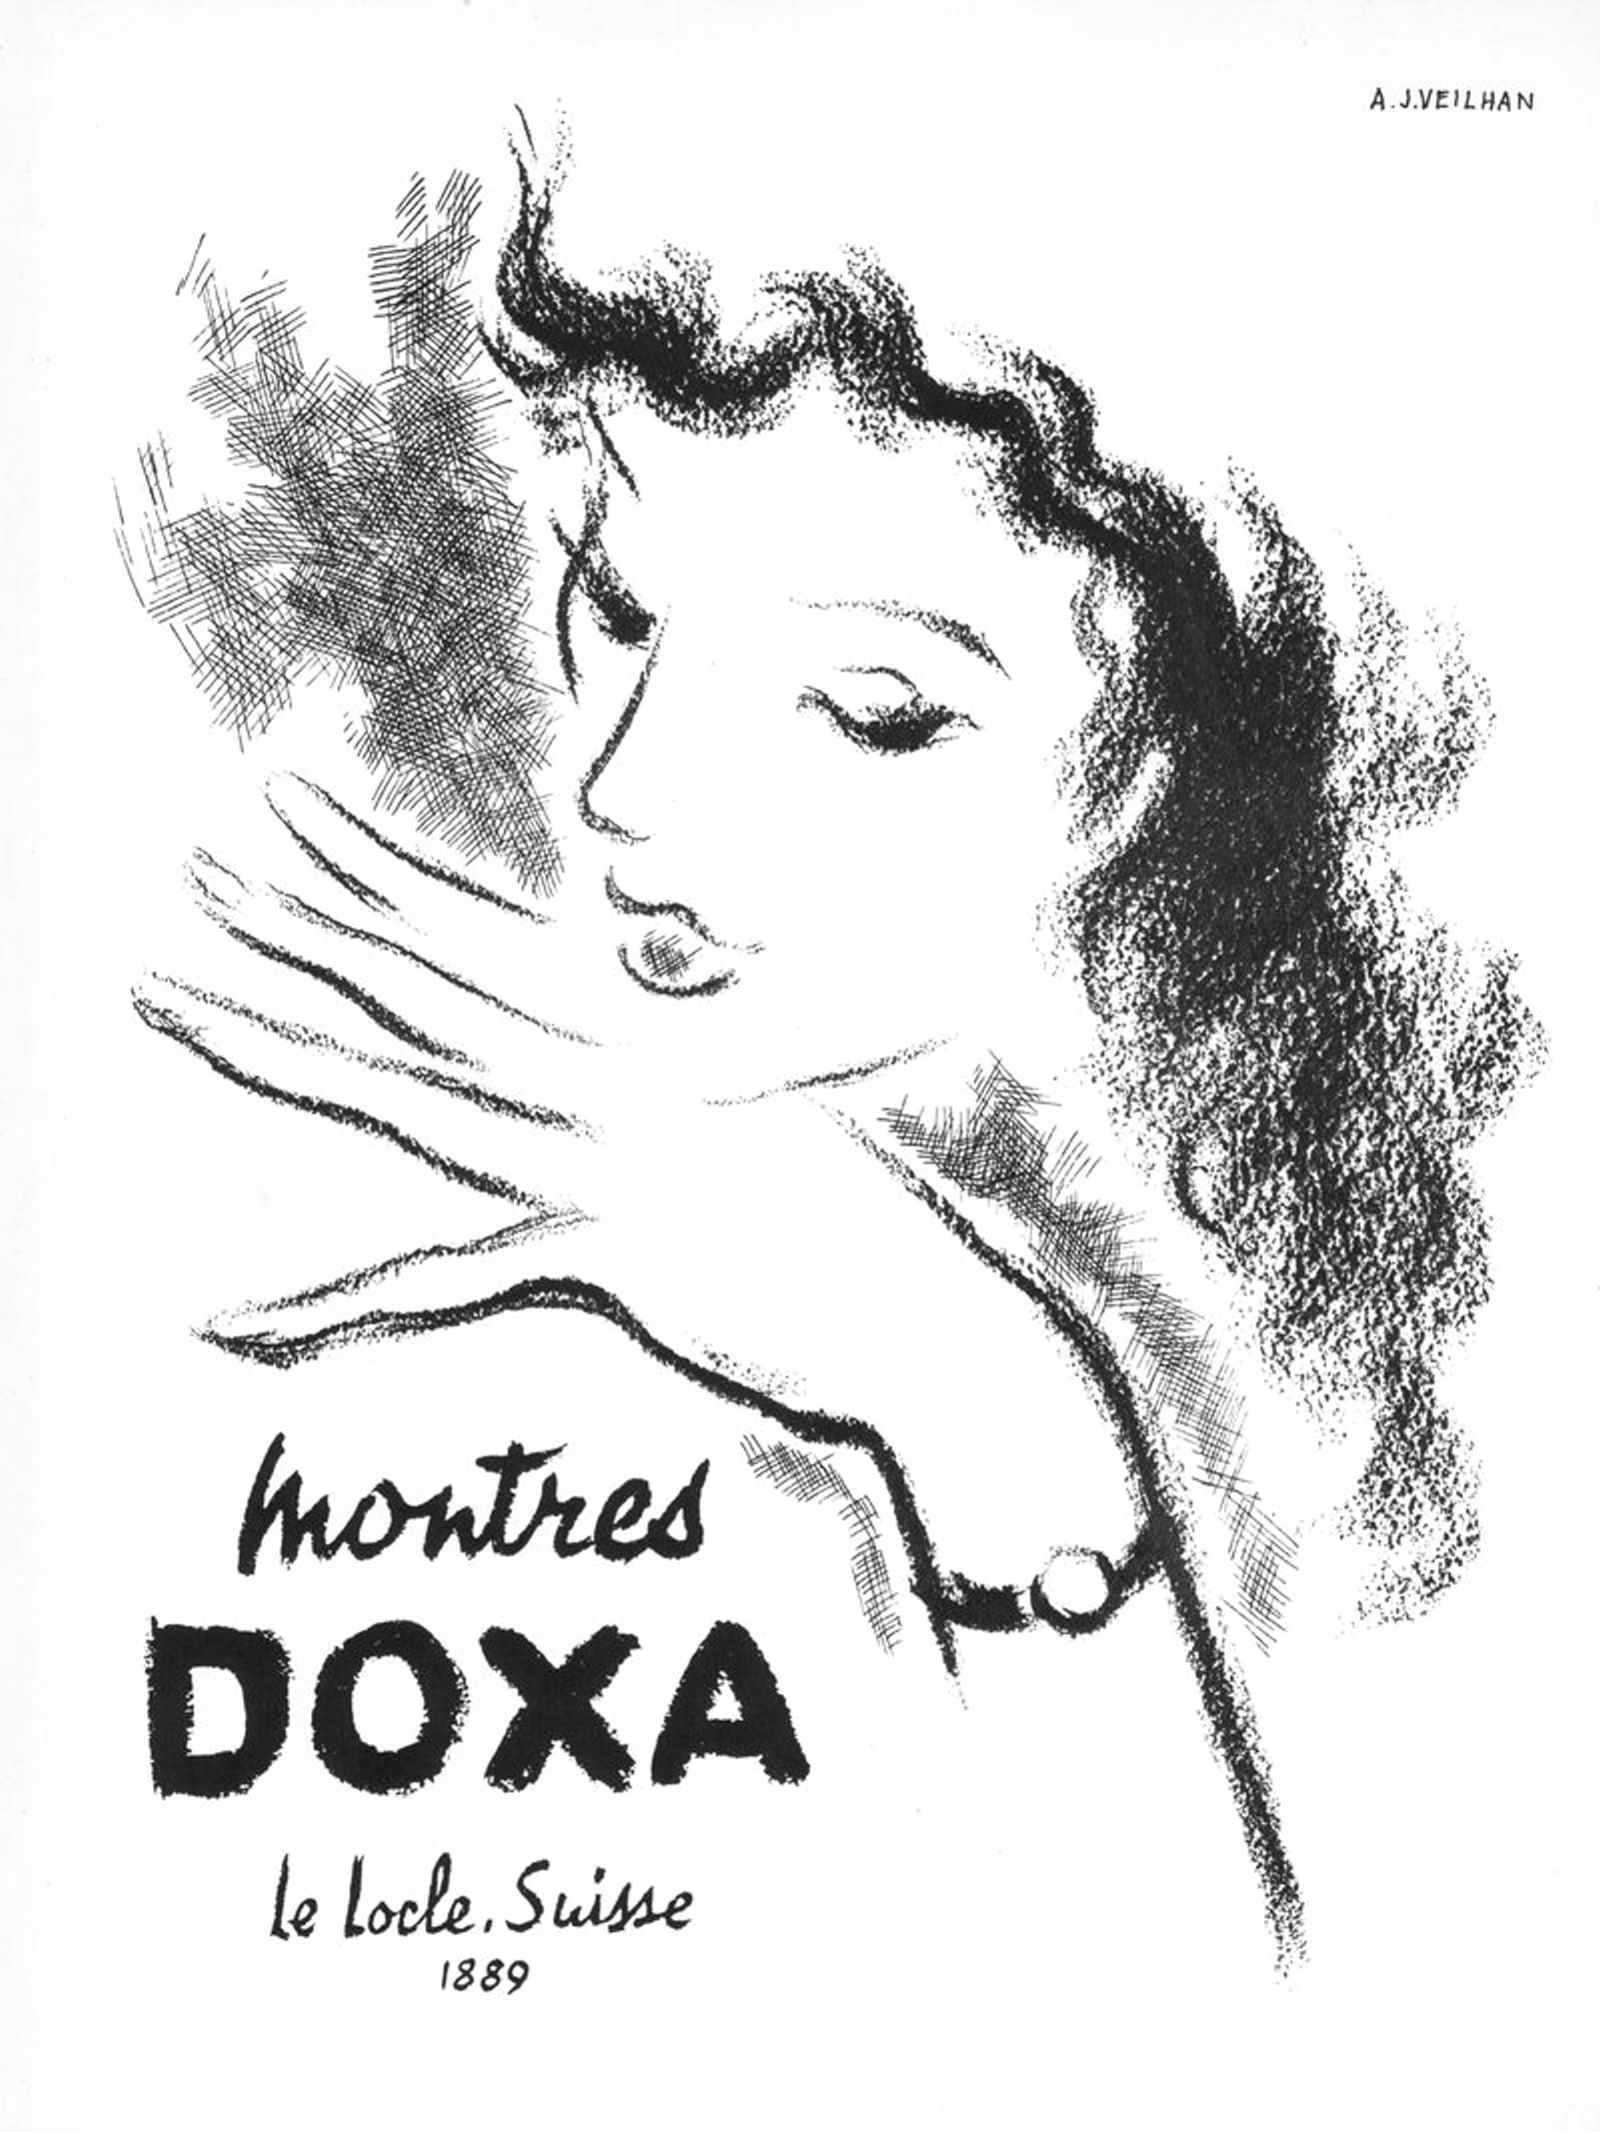 Doxa 1952 03.jpg